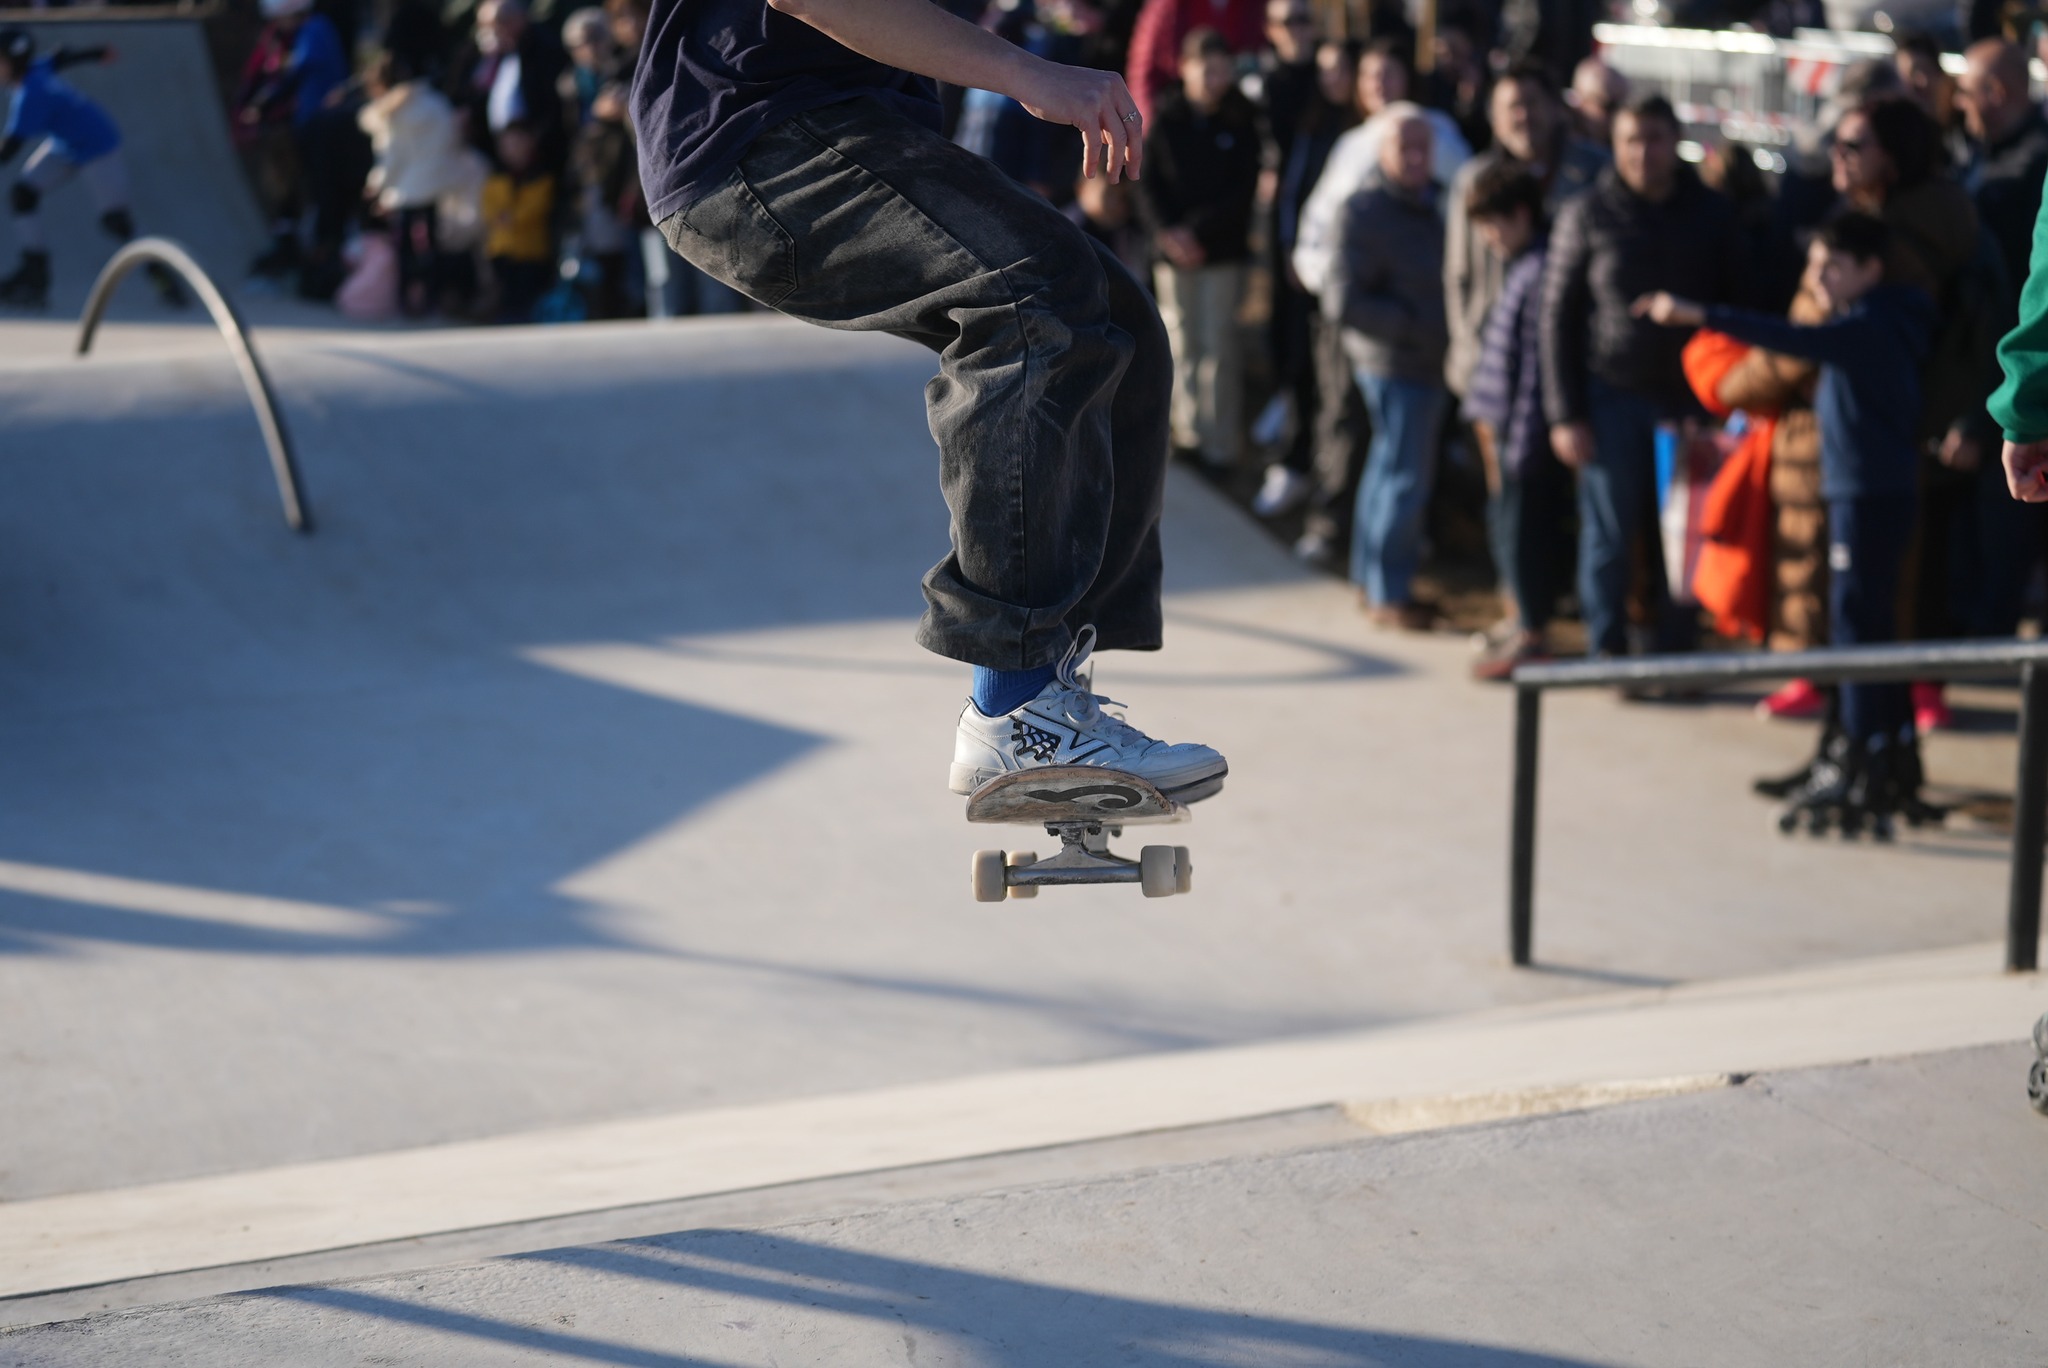 inaugurazione skatepark: dettaglio di un salto